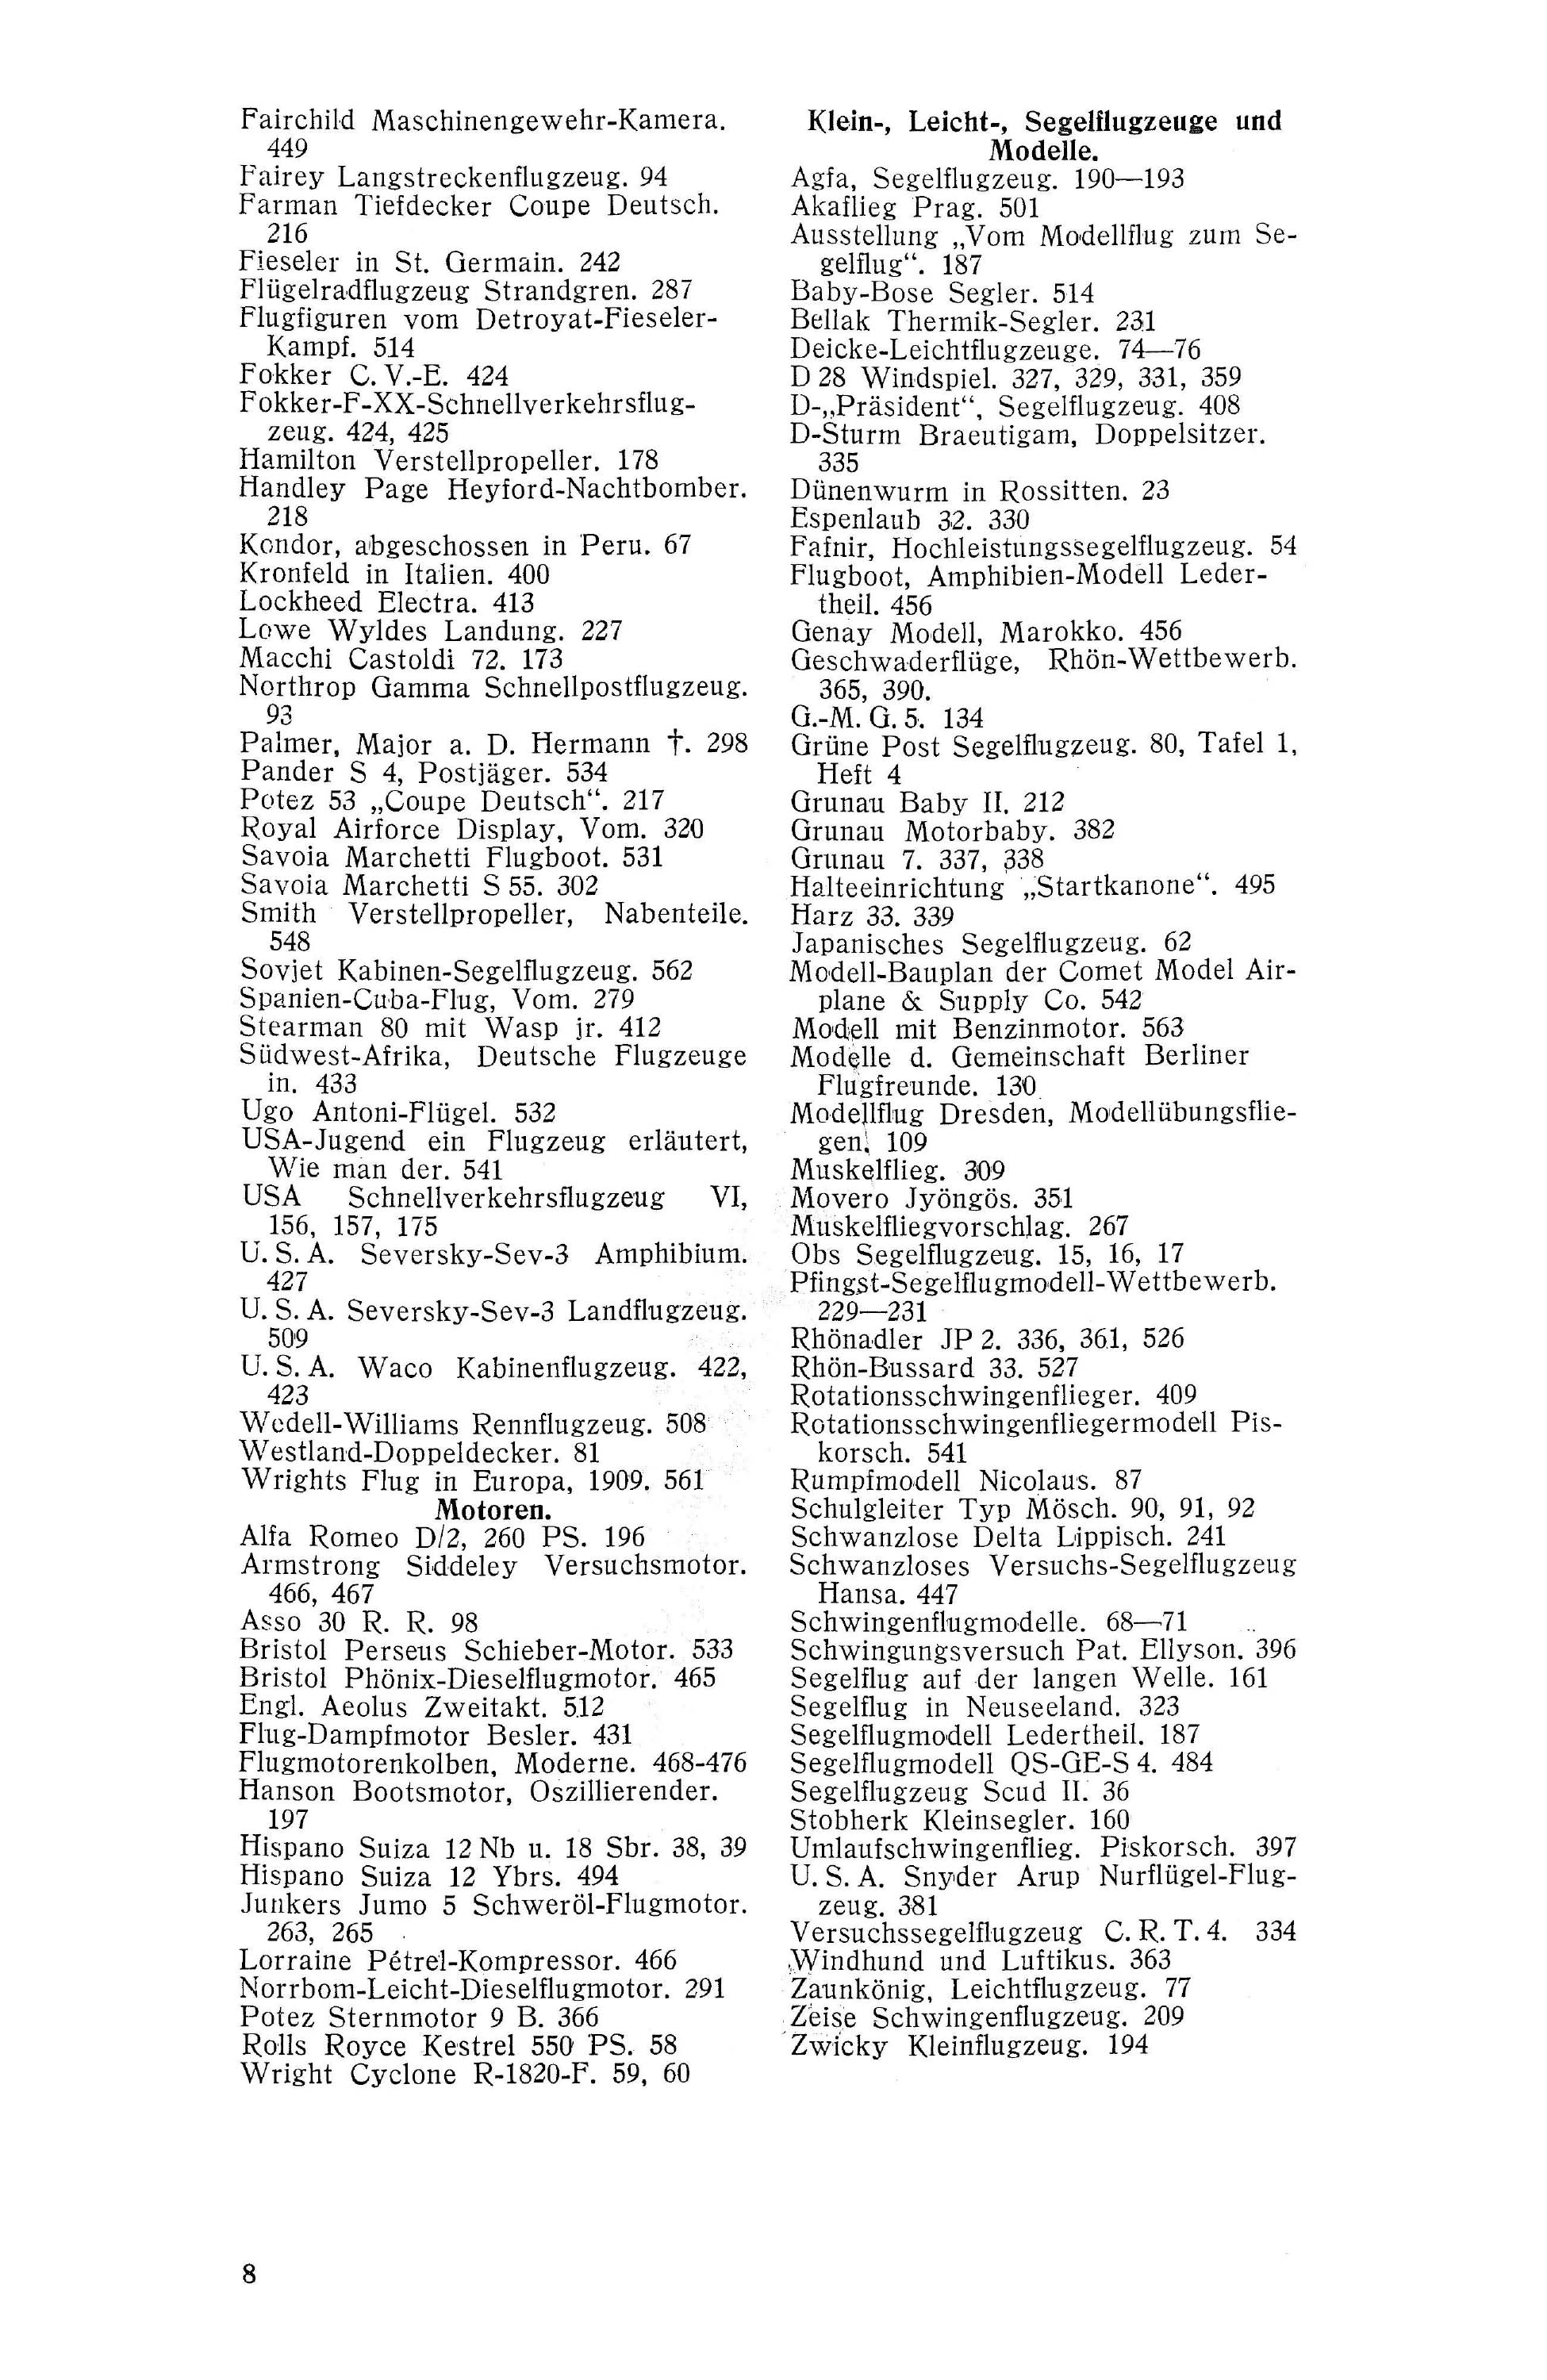 Sachregister und Inhaltsverzeichnis der Zeitschrift Flugsport 1933